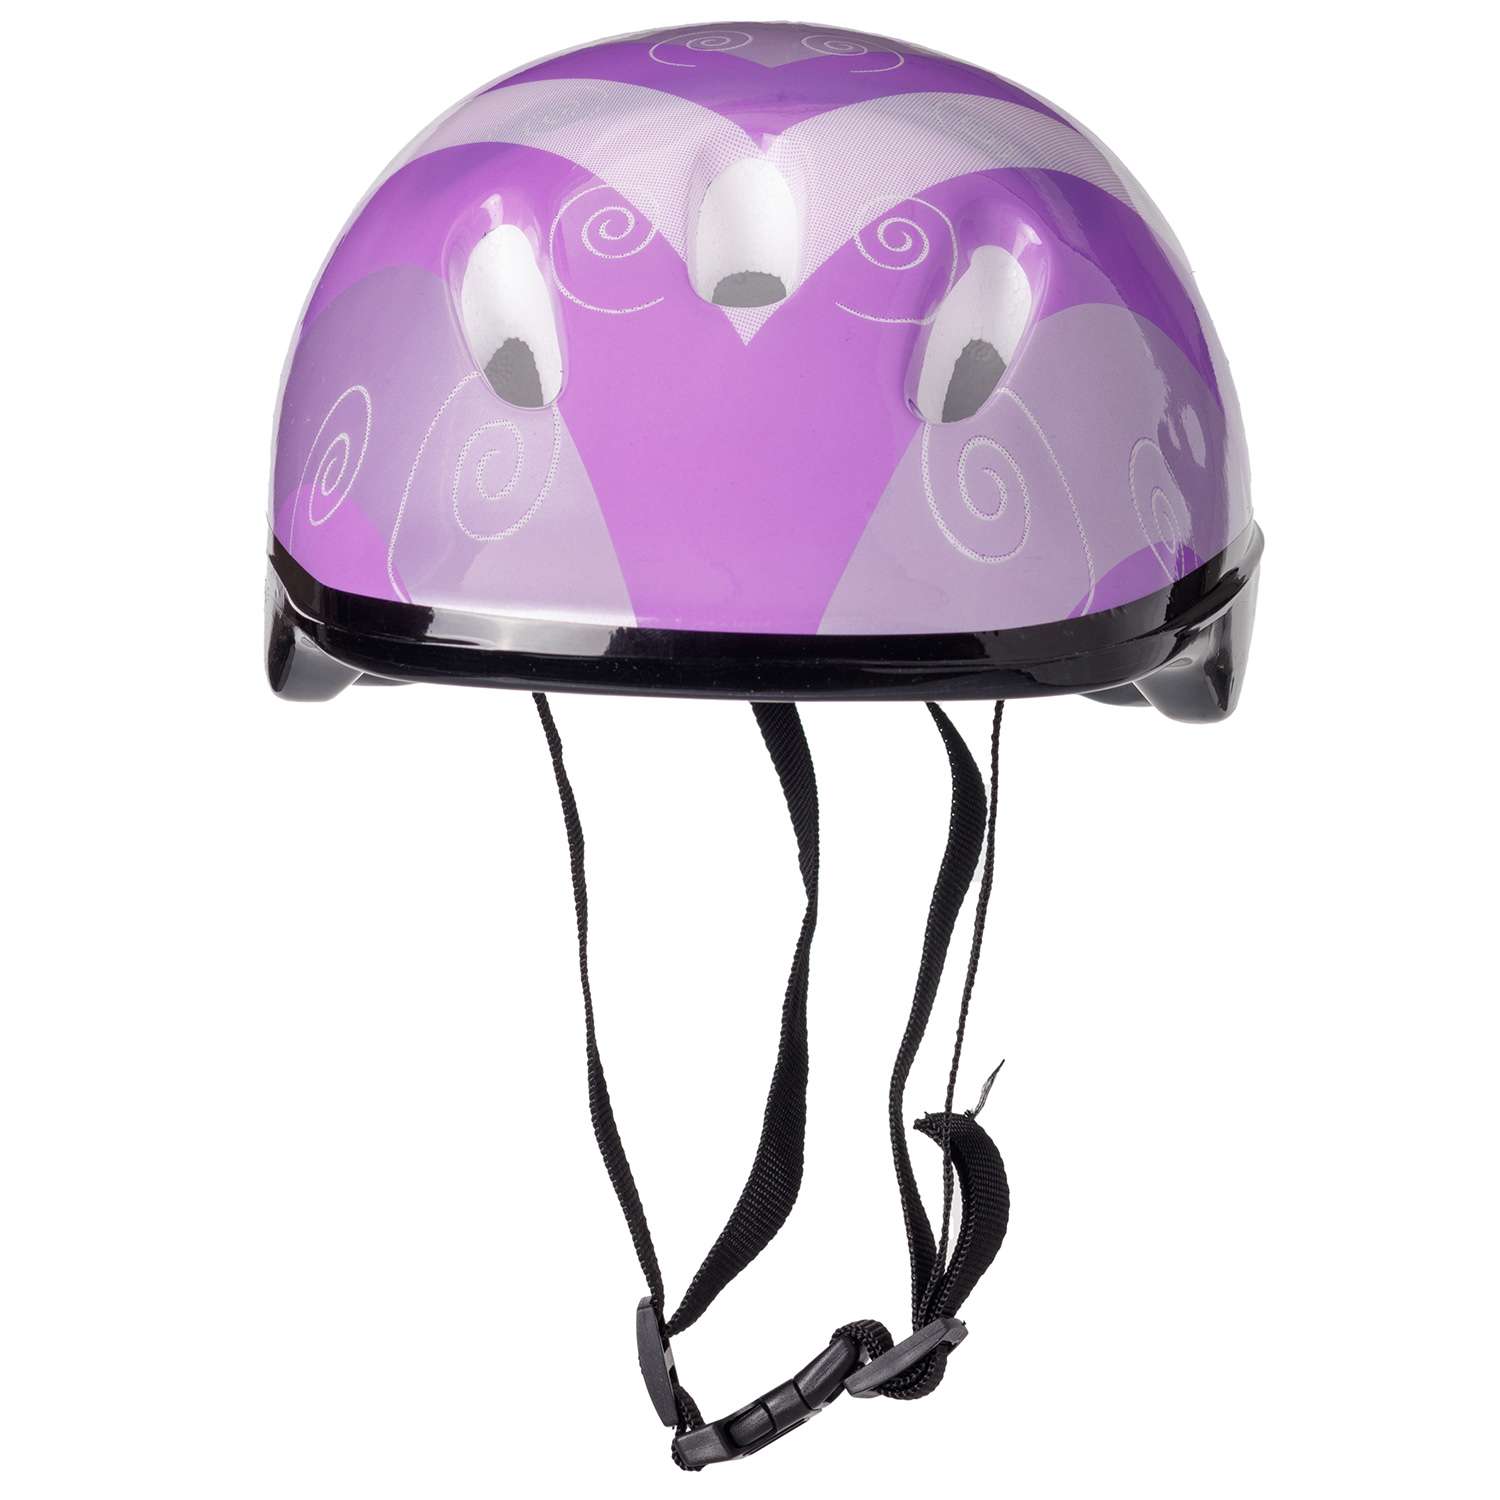 Защита Шлем BABY STYLE для роликовых коньков фиолетовый обхват 57 см. - фото 3